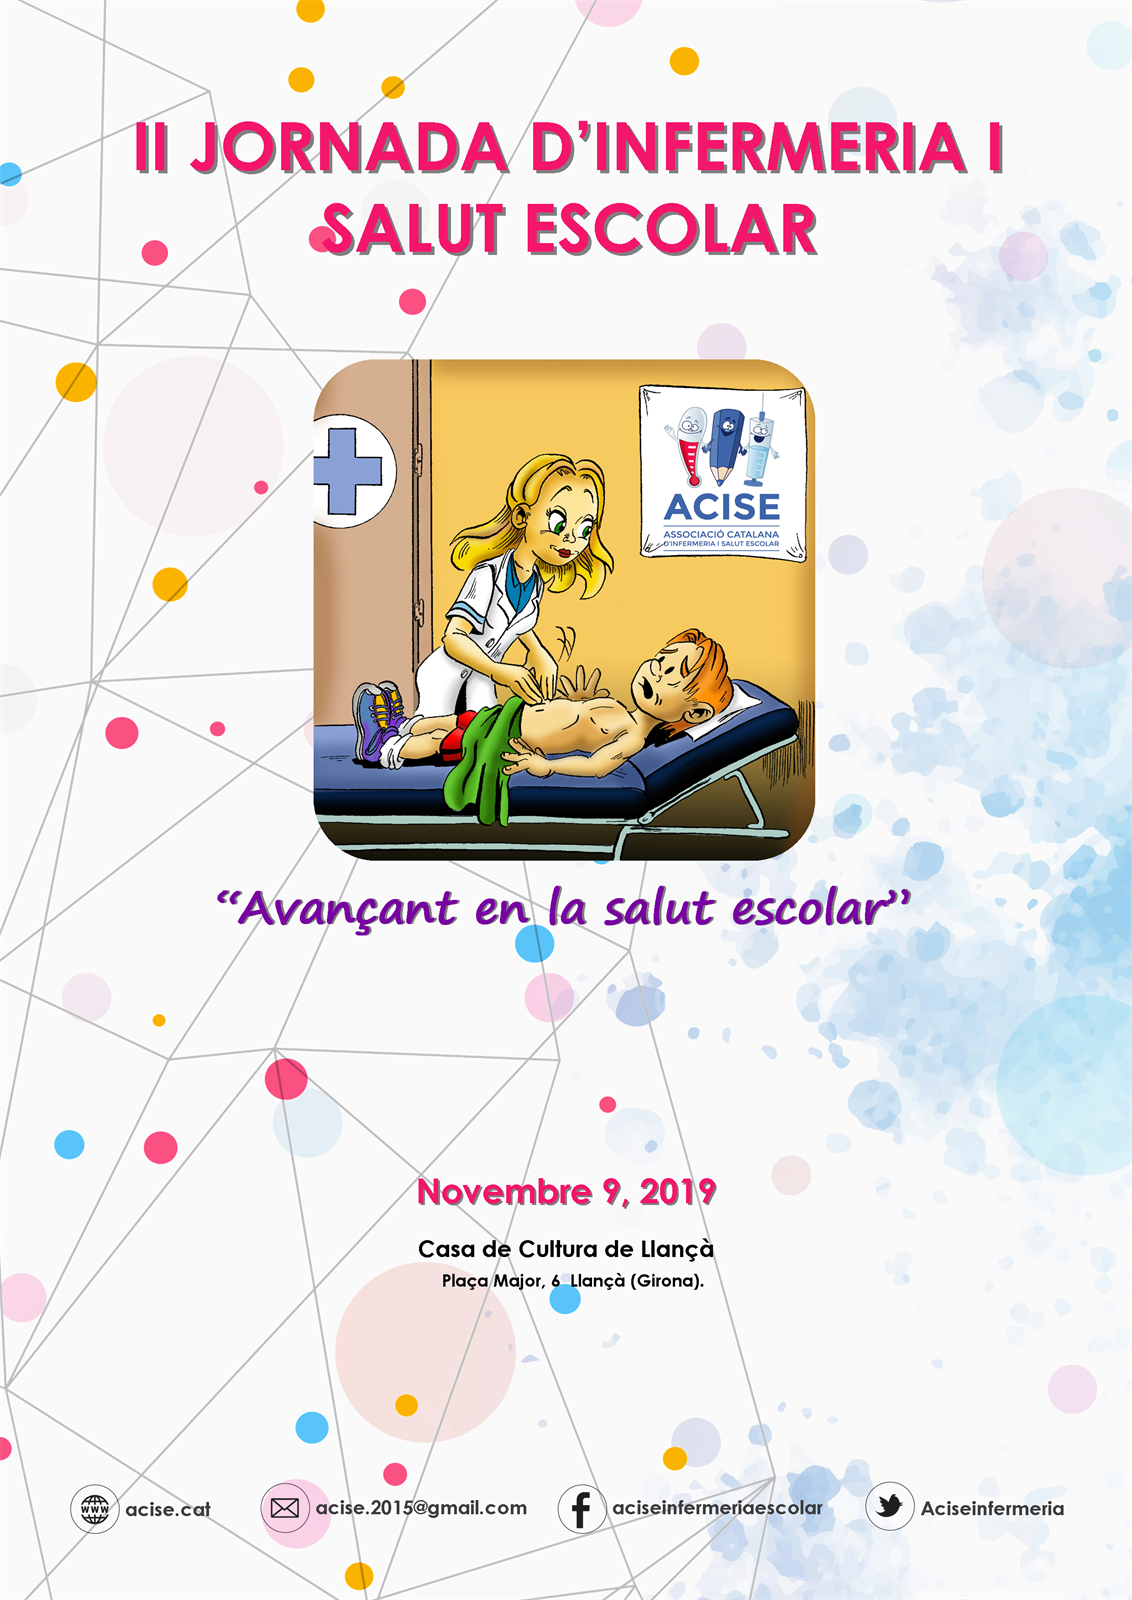 L'Associació Catalana d'Infermeria i Salut Escolar (ACISE) celebra la segona Jornada d'Infermeria i Salut Escolar